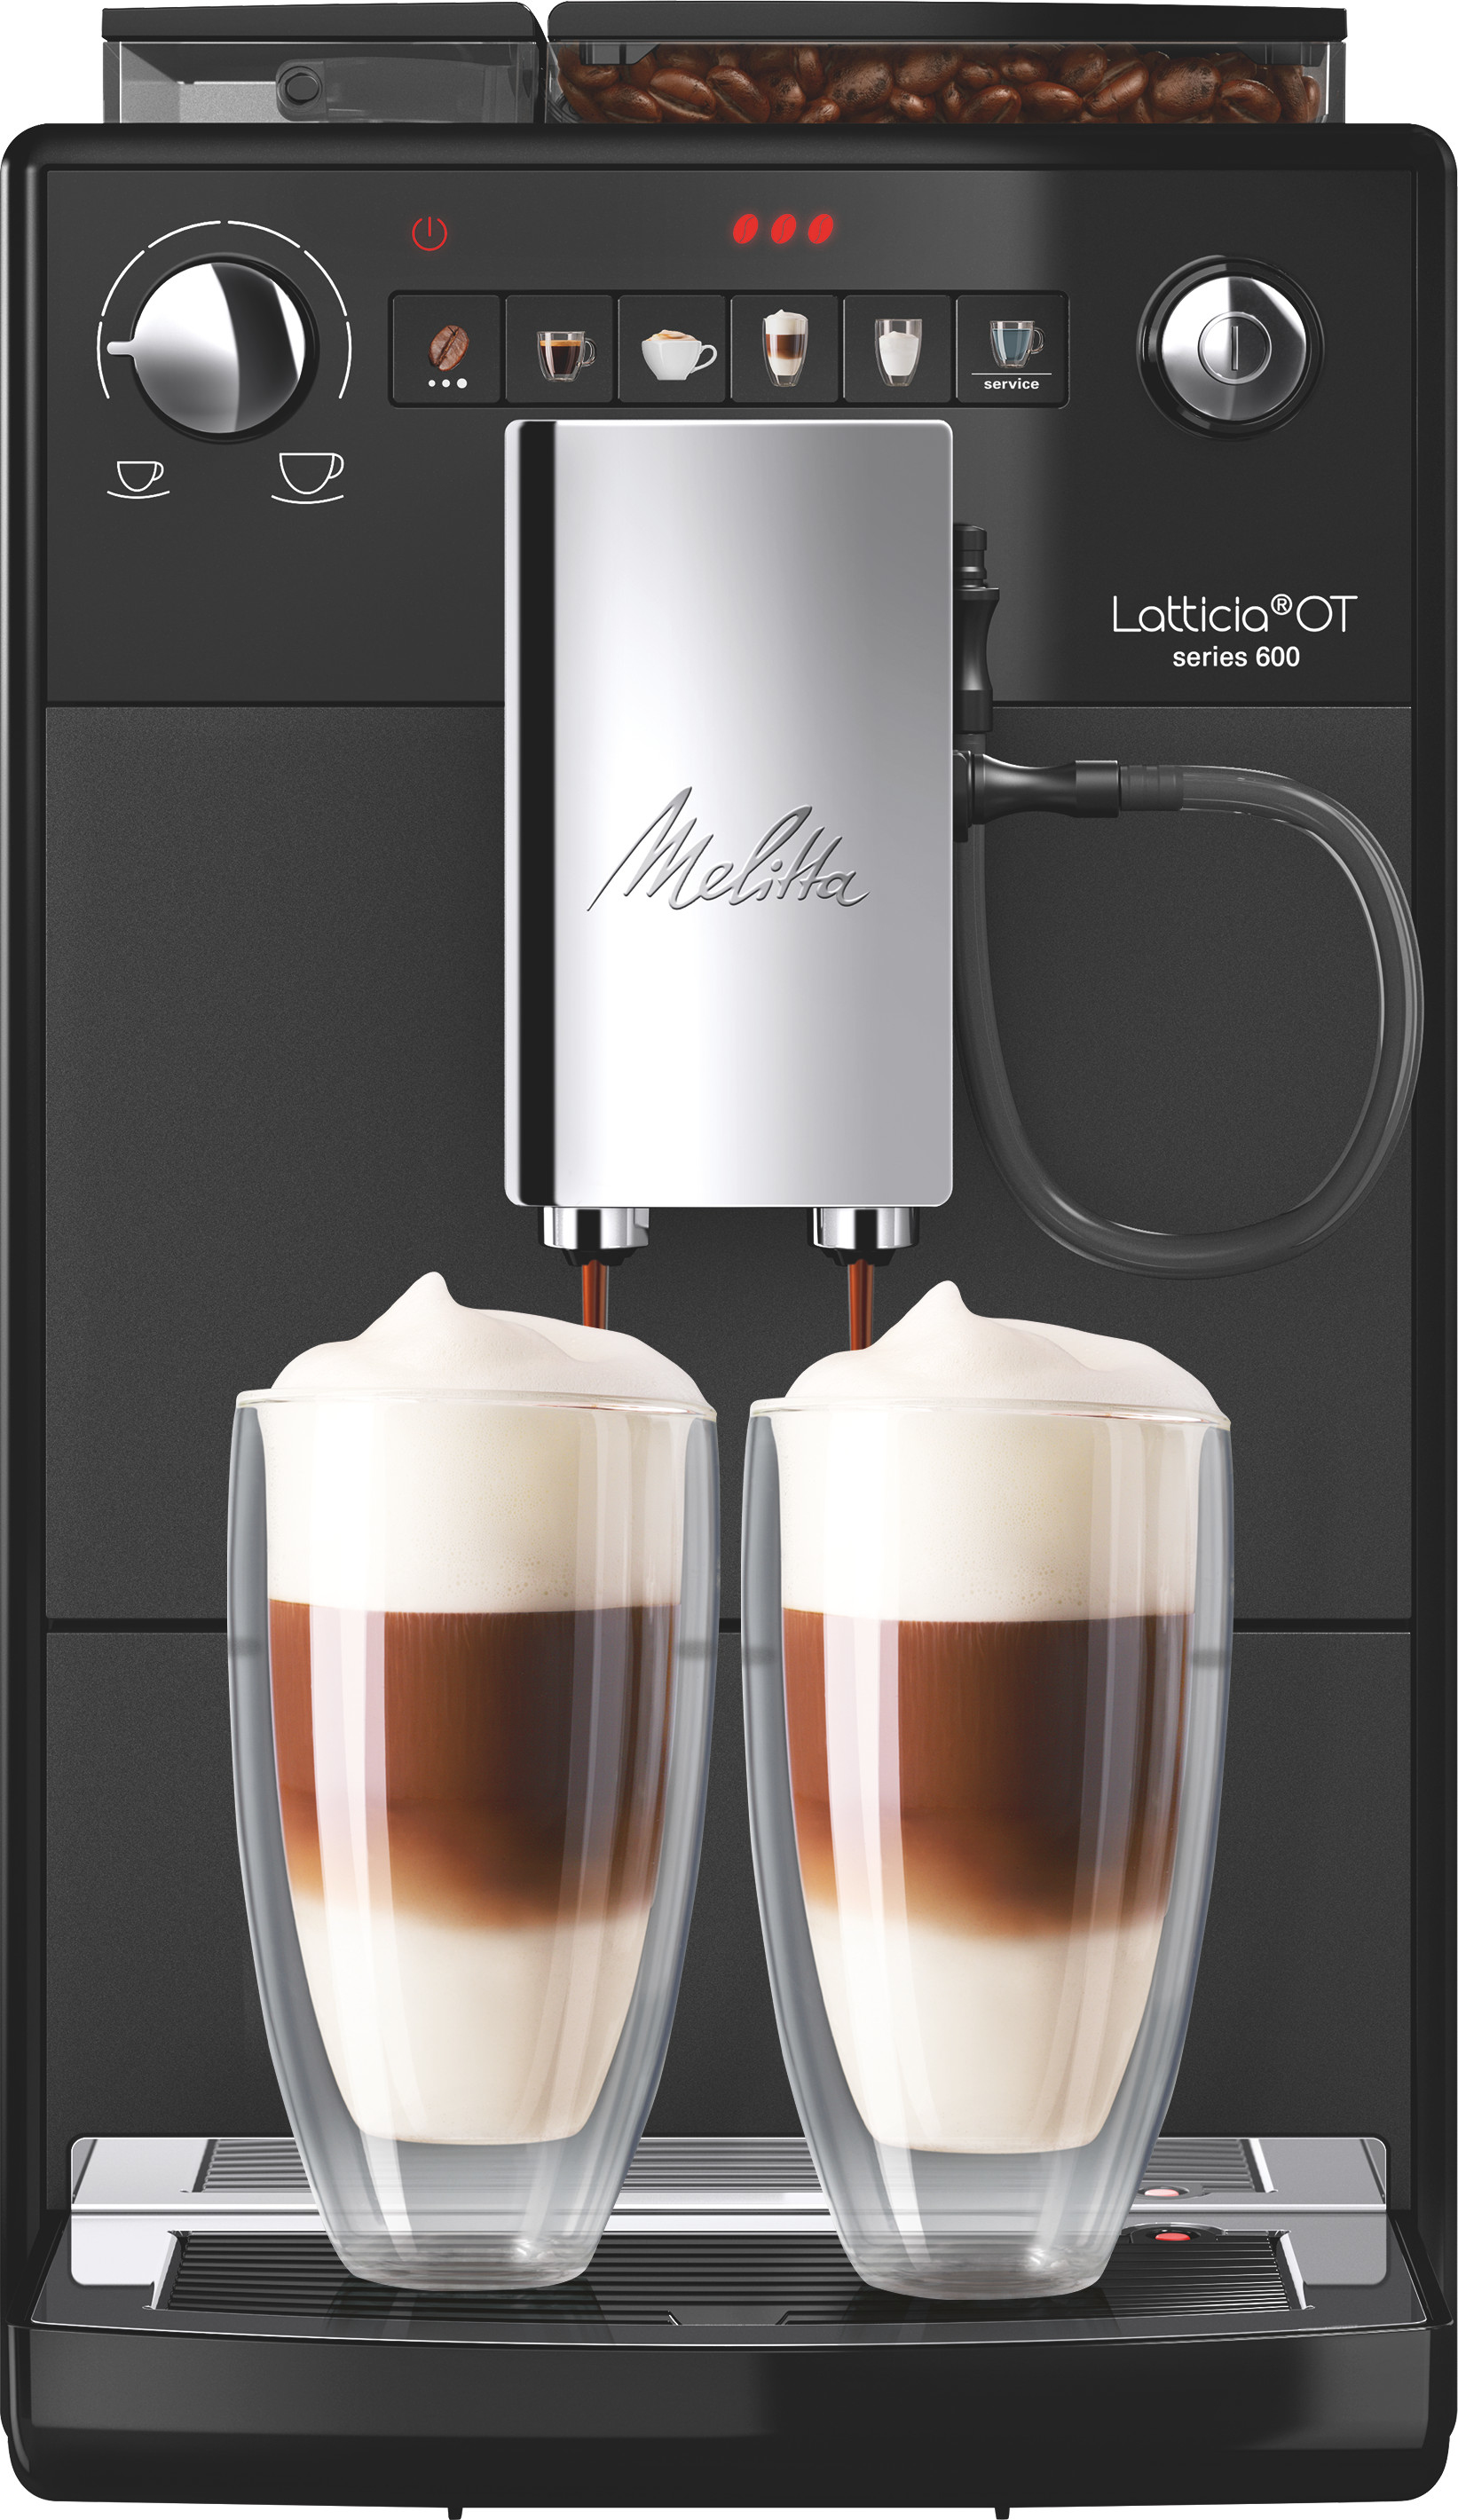 Macchina per caffè Melitta F300-100 Automatica espresso 1,5 L [6771774]